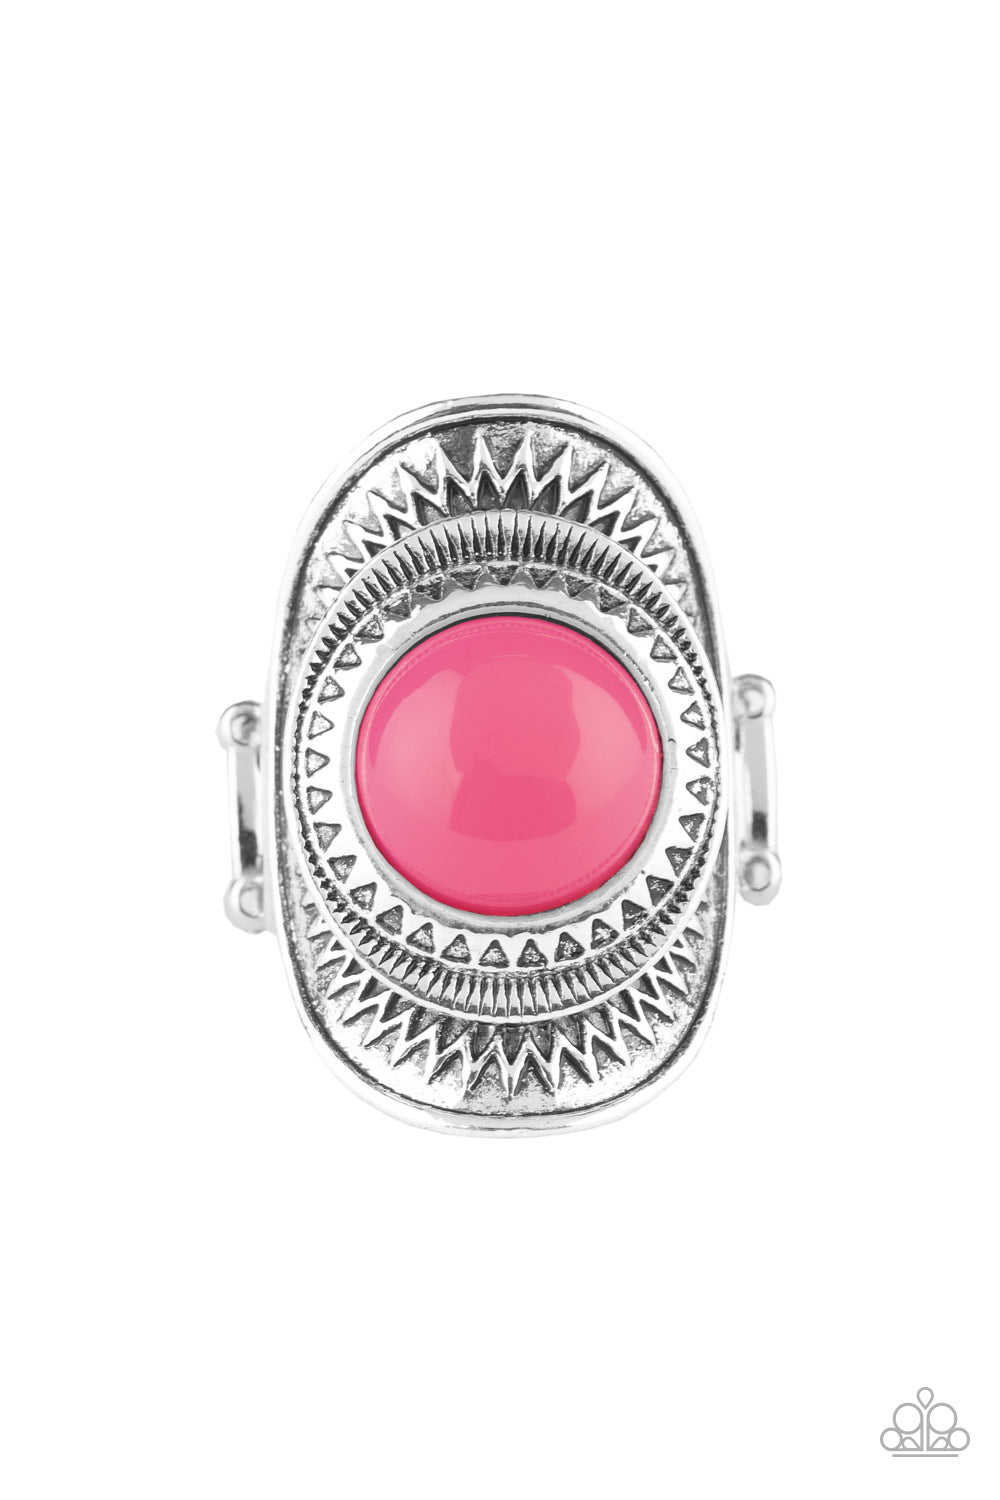 Sunny Sensations - Pink Ring